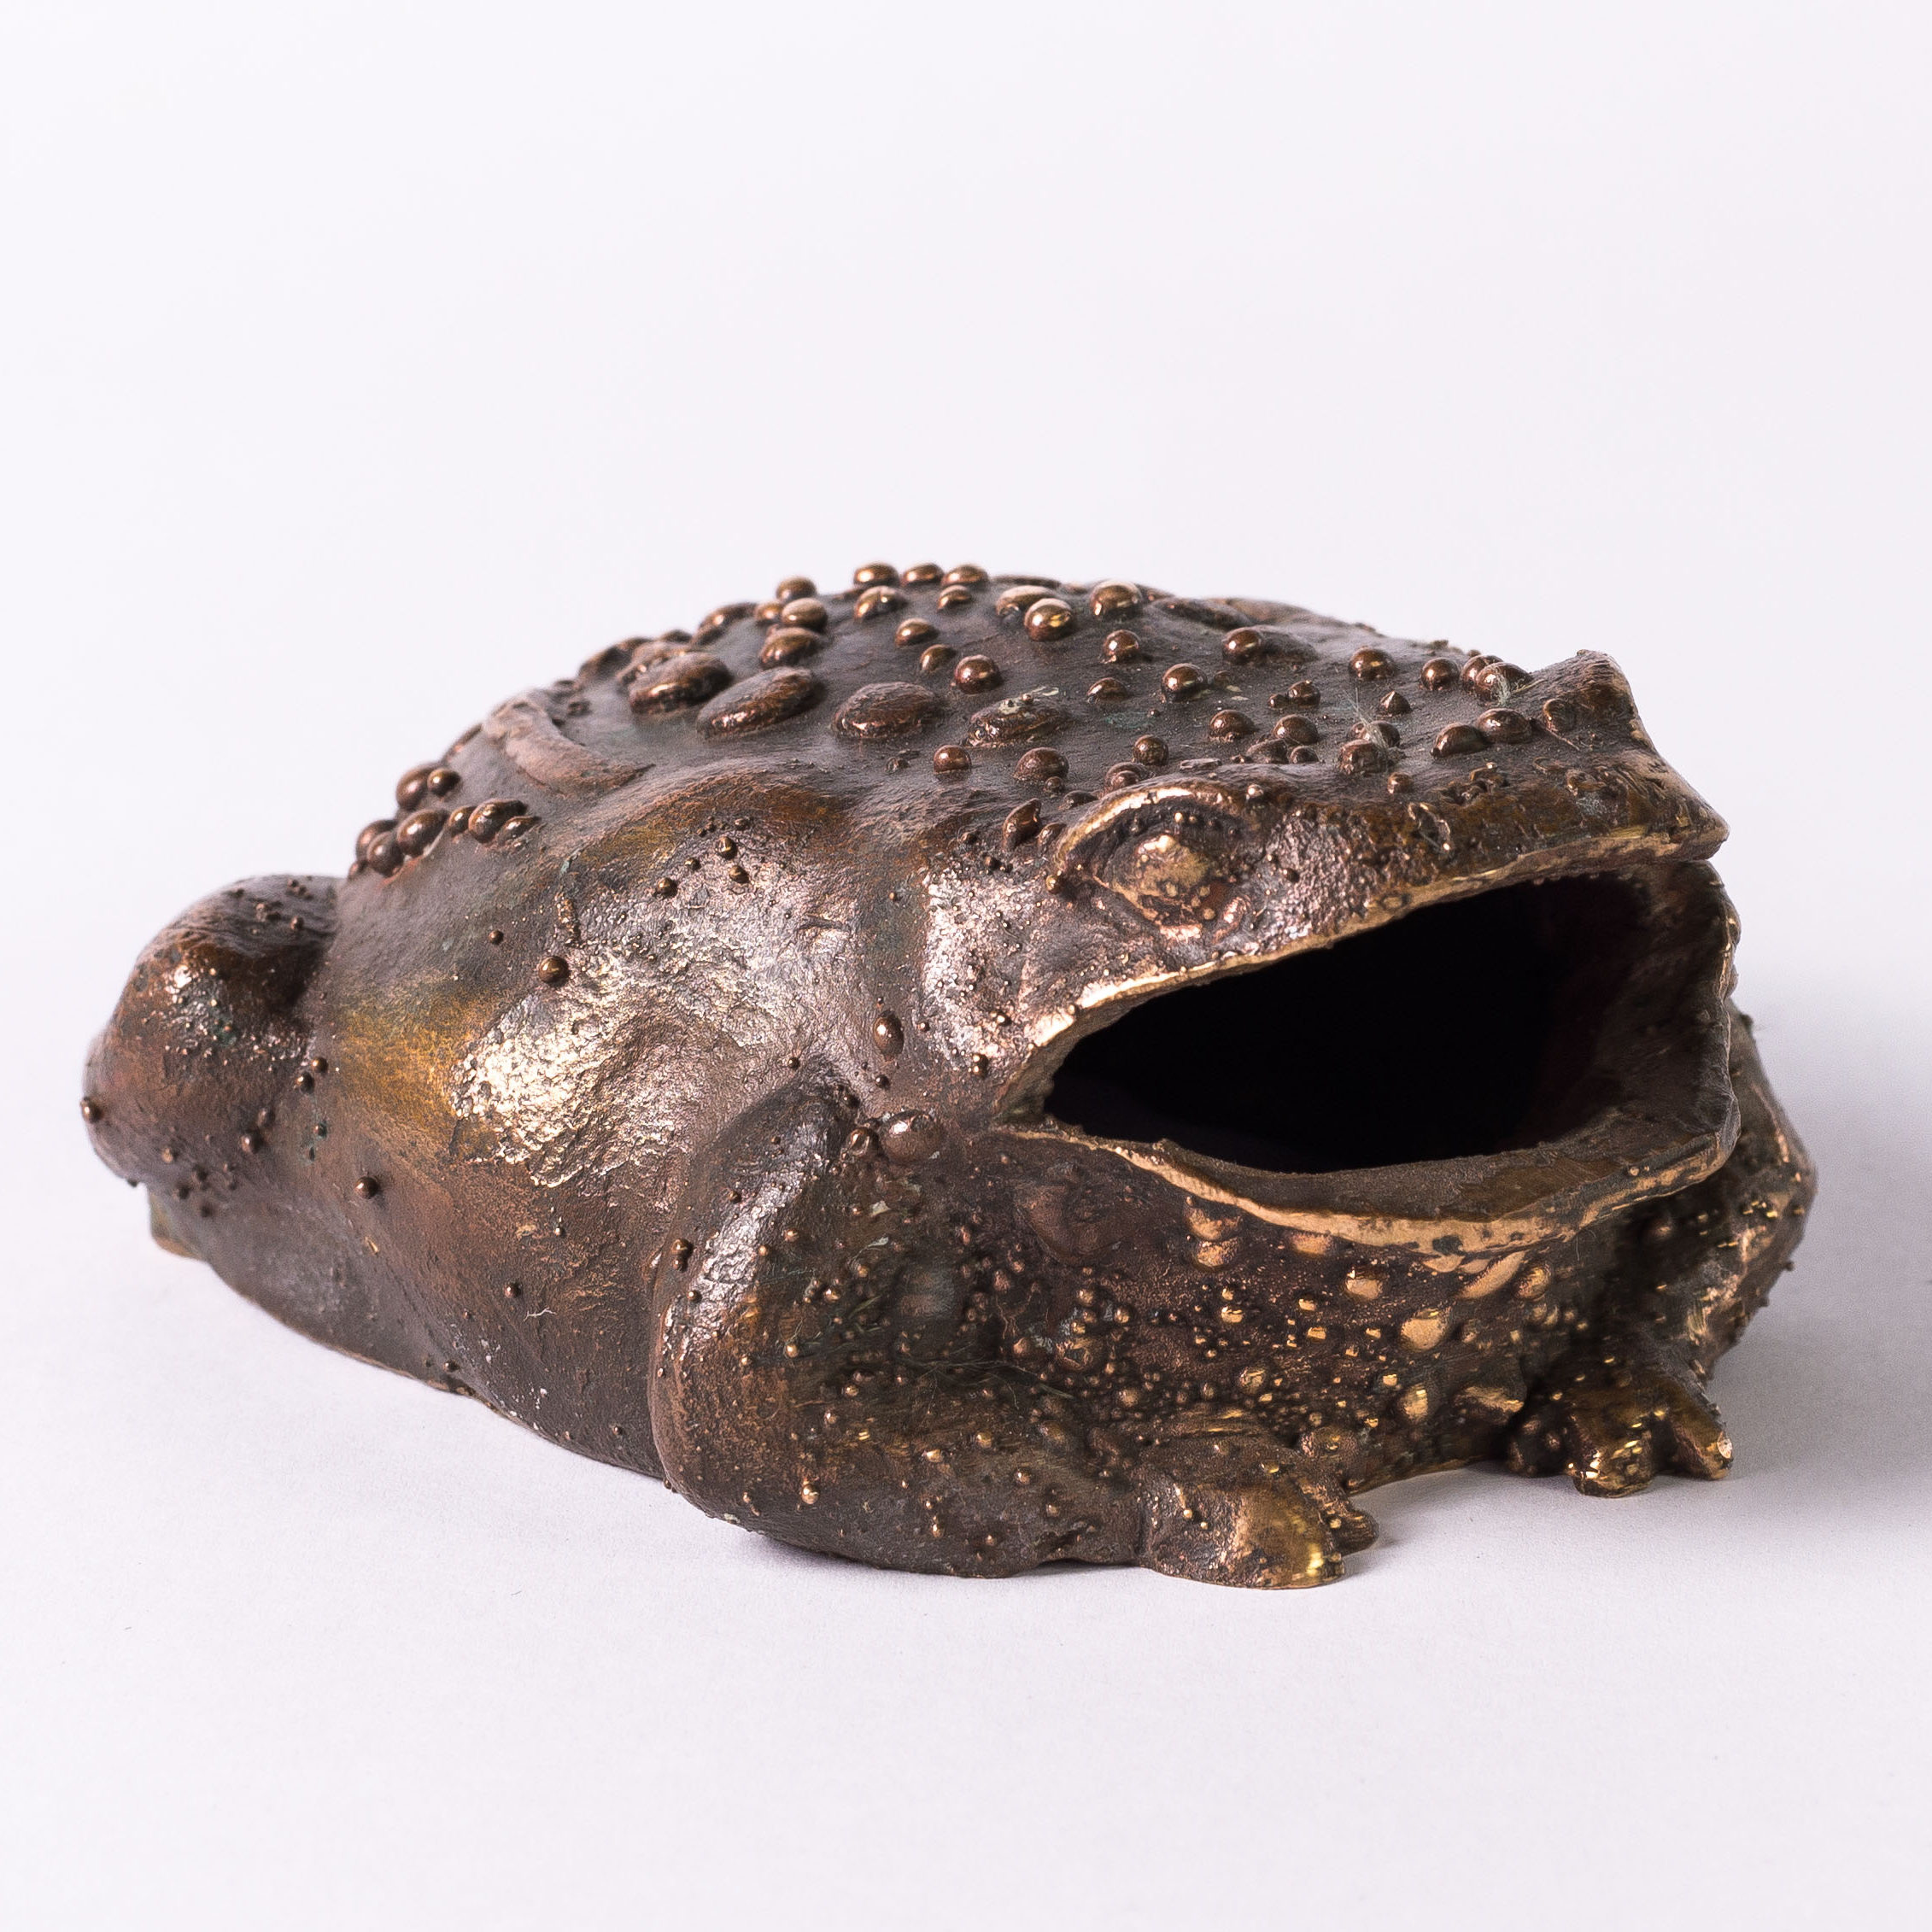 Toad. 8x6x5cm. Bronze